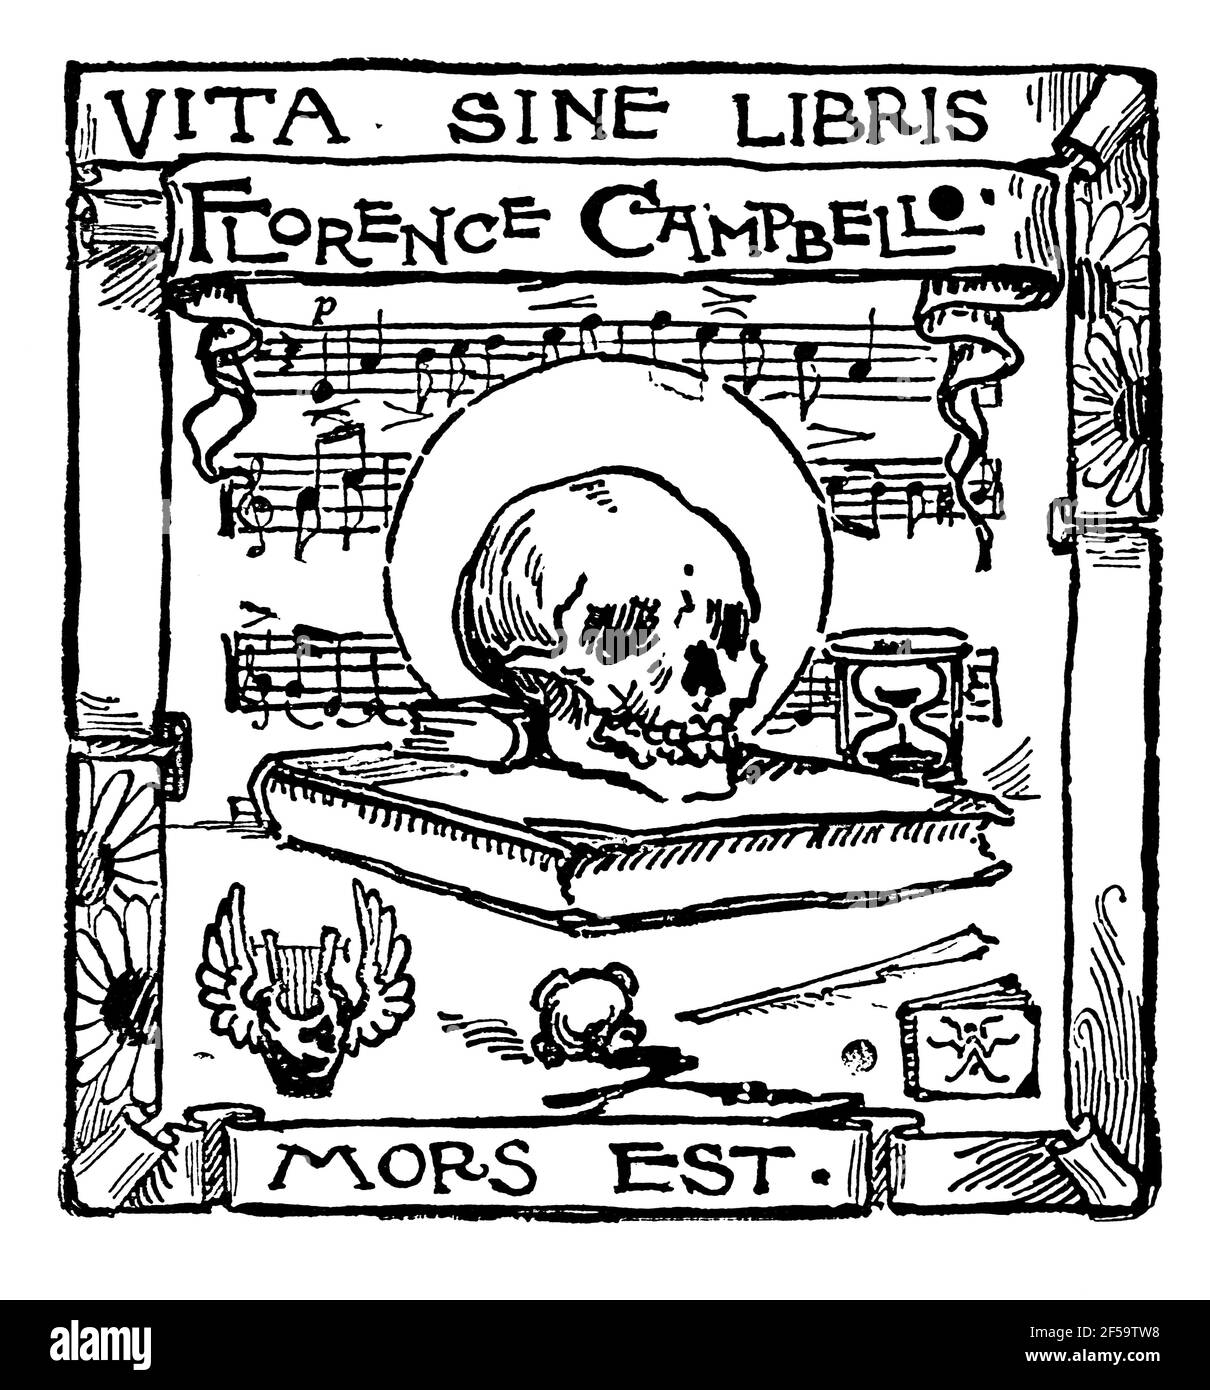 Vita Sine Libris Mors Est (la vita senza i libri è la morte) libro di mortalità per autore e poeta, Florence Campbell-Perugini di British Animal Artist A. Foto Stock